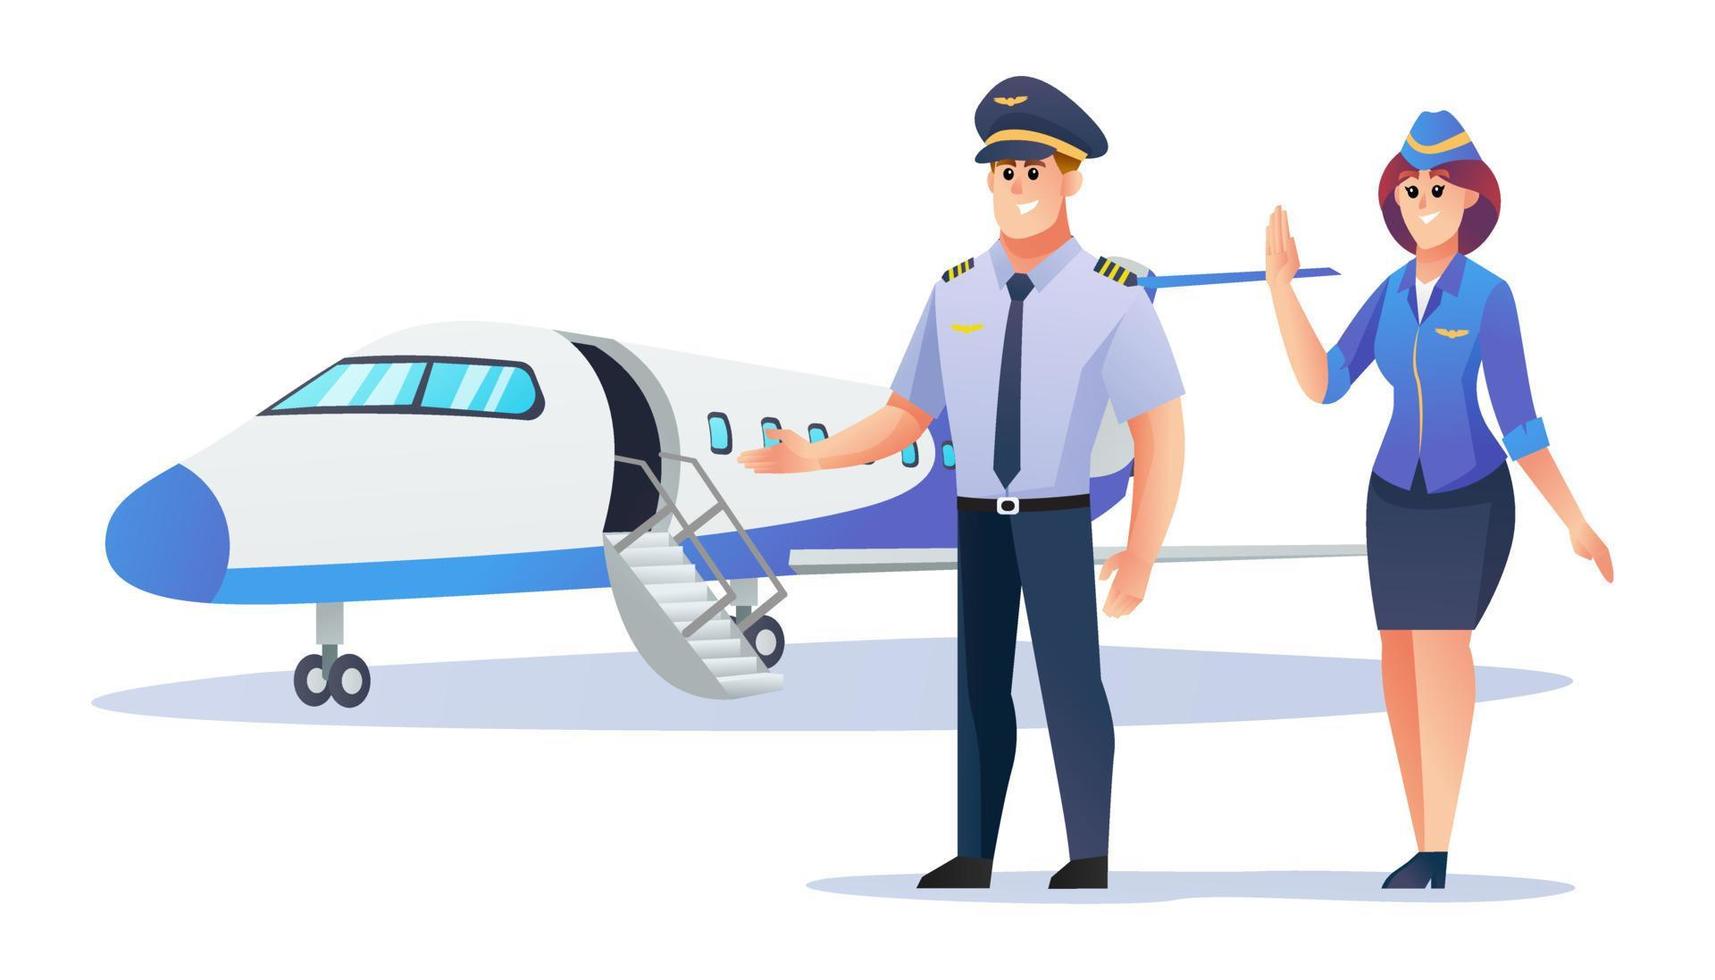 piloto e aeromoça com ilustração de desenho de avião vetor